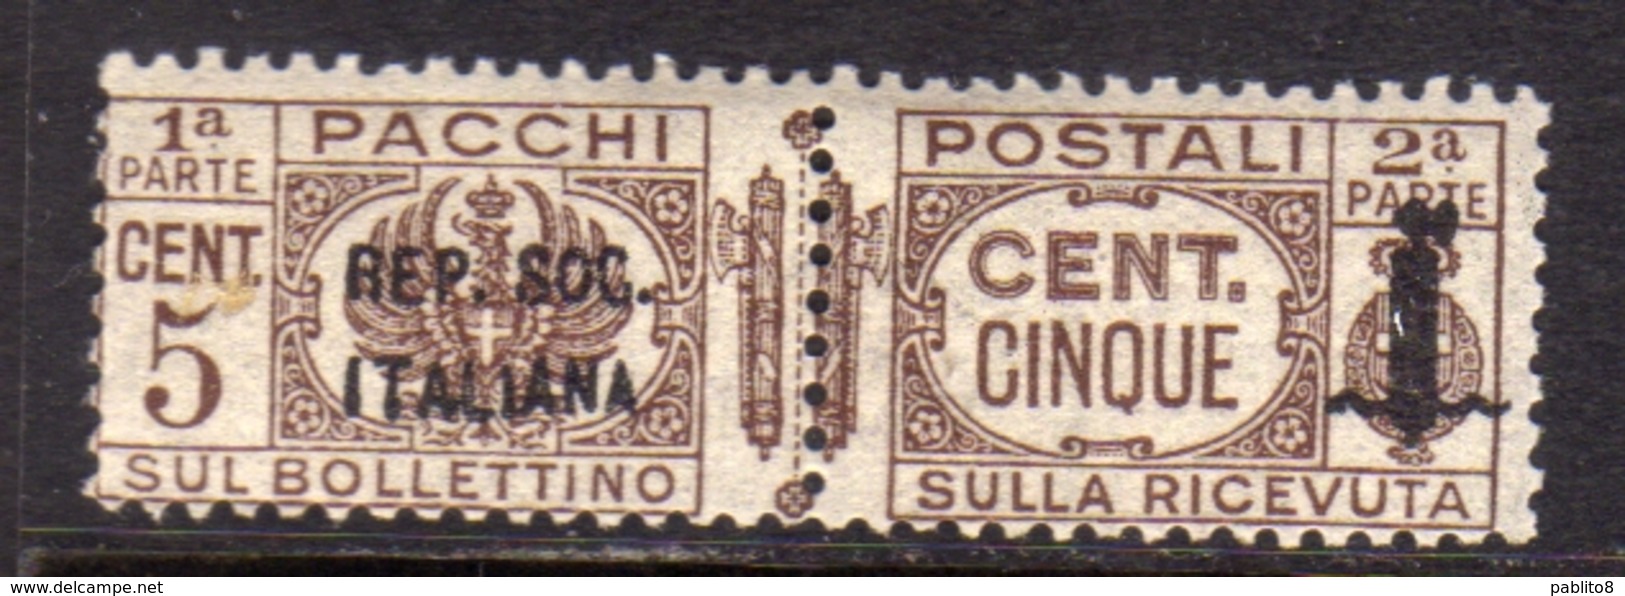 ITALIA REGNO ITALY KINGDOM 1944 RSI REPUBBLICA SOCIALE ITALIANA PACCHI POSTALI PARCEL POST FASCIO CENT. 5c MNH - Paquetes Postales